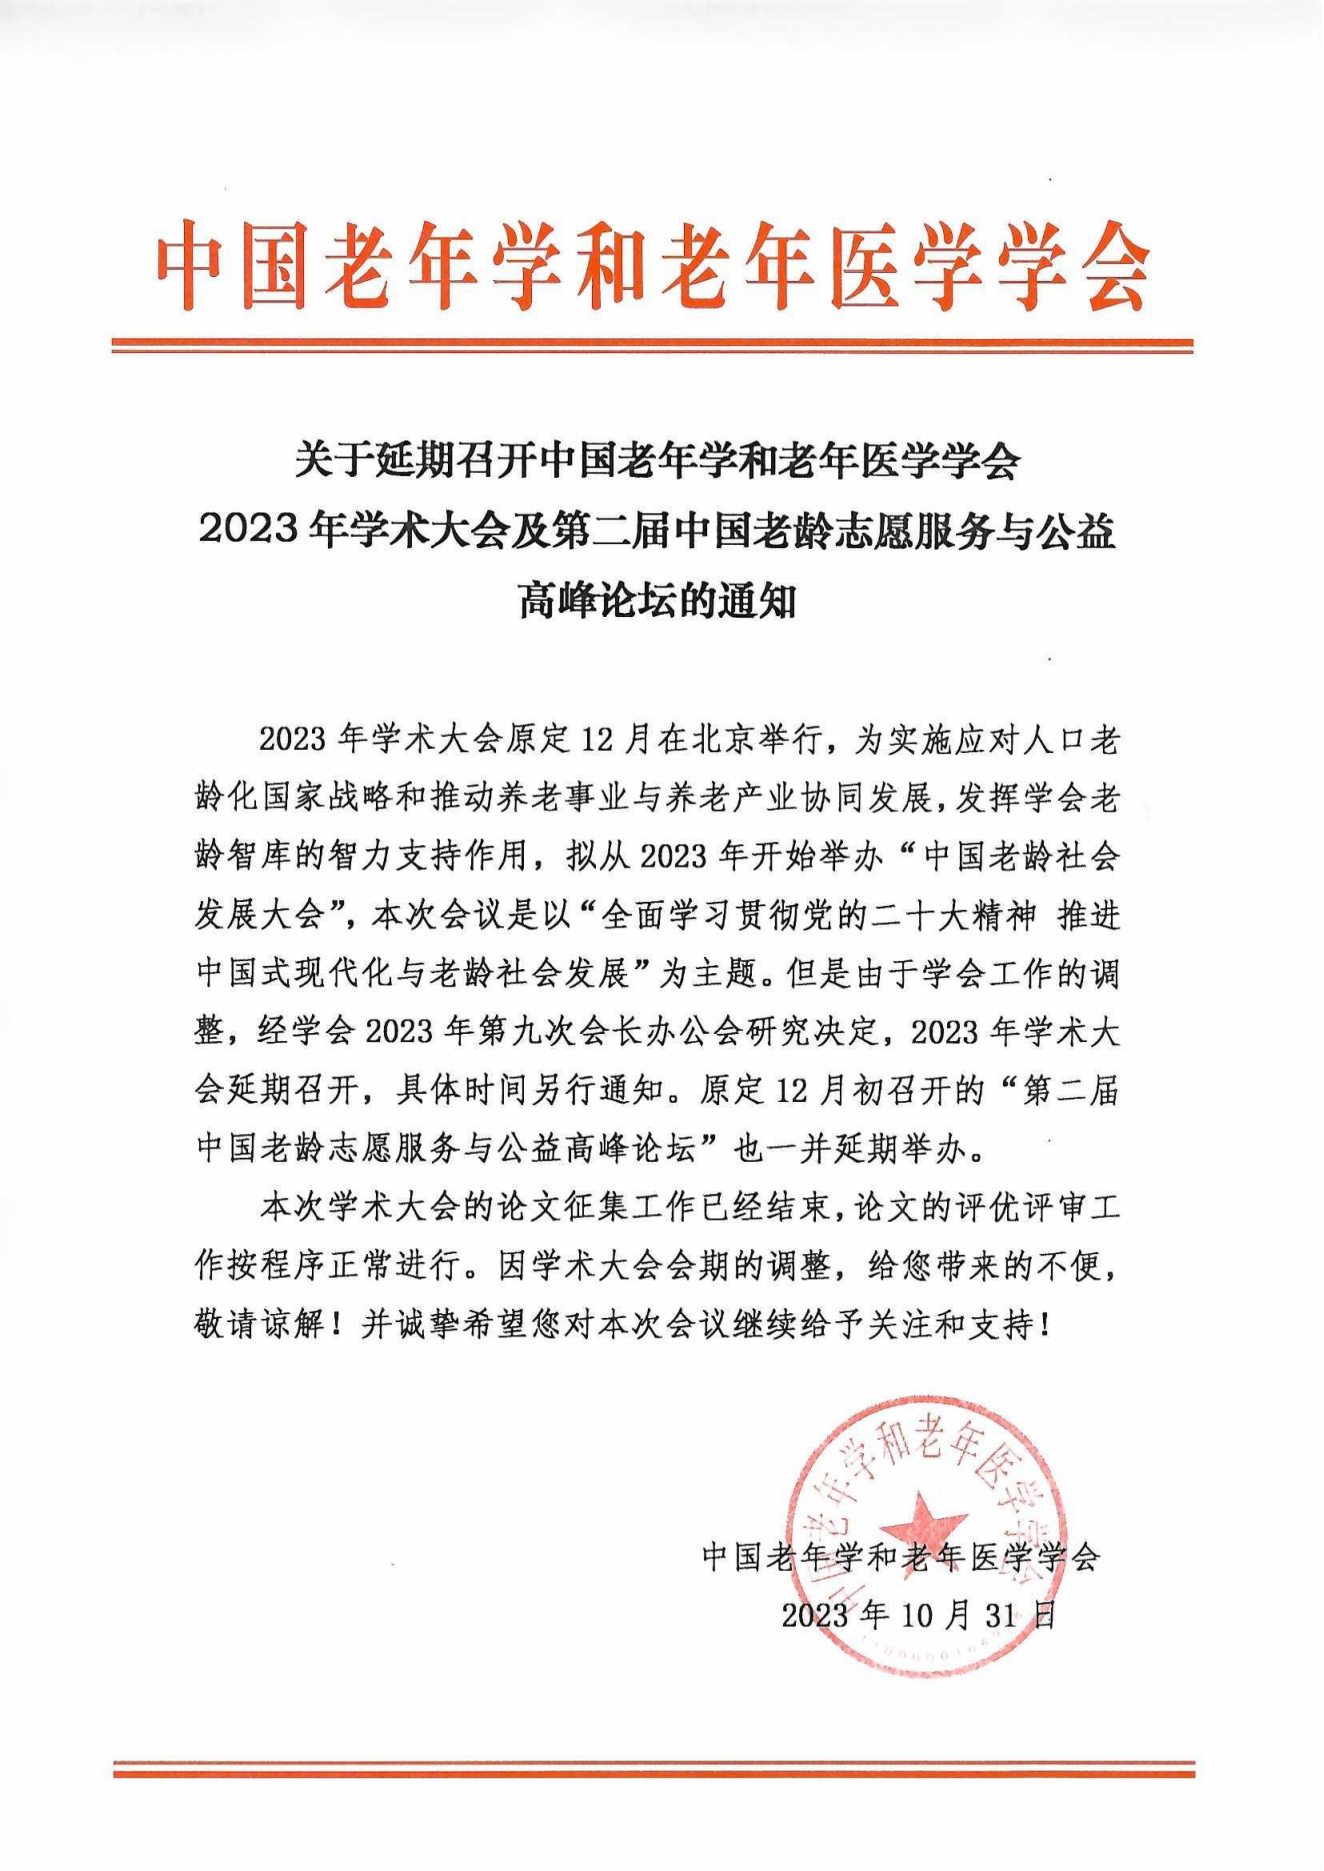 关于延期召开2023年学术大会及”第二届中国老龄志愿服务与公益高峰论坛“的通知_00.png